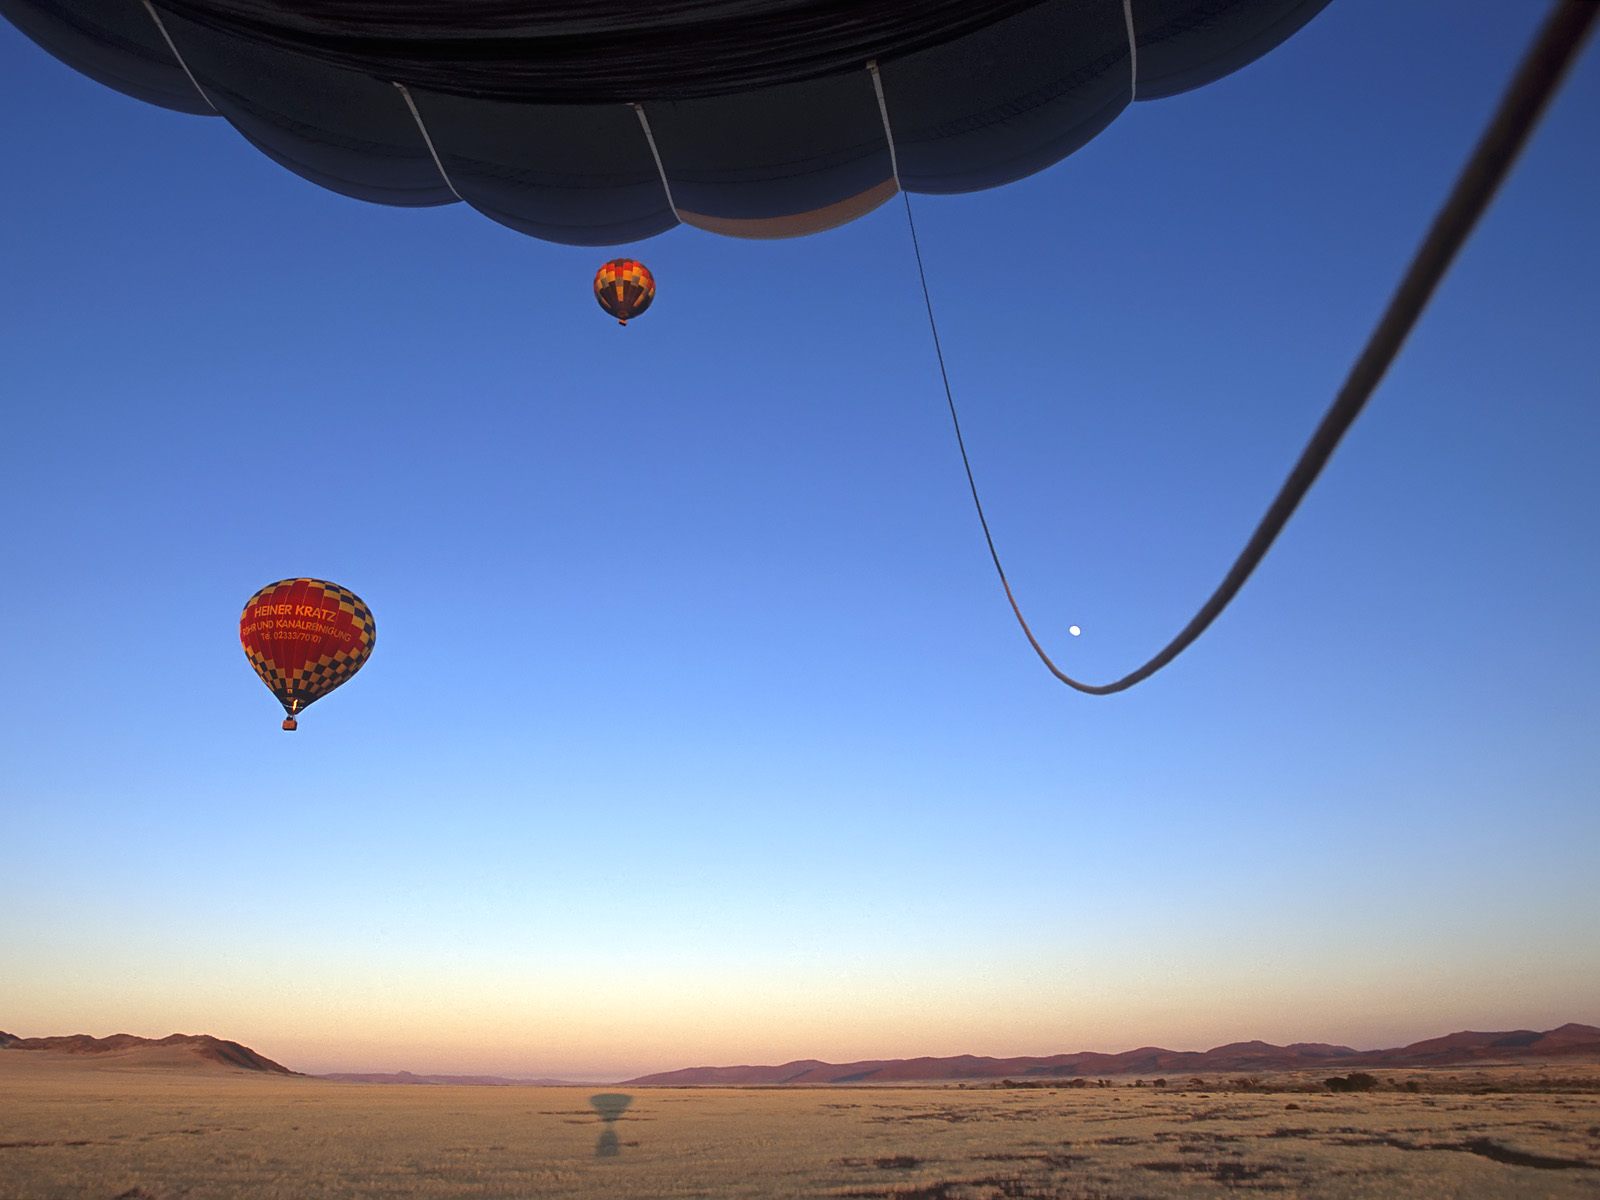 壁纸1600x1200文化之旅 地理人文景观壁纸精选 第二辑 Hot Air Balloons Take Off at Sunrise Namib Desert Namibia 纳米比亚 纳米比沙漠热气球图片壁纸壁纸 文化之旅地理人文景观壁纸精选 第二辑壁纸 文化之旅地理人文景观壁纸精选 第二辑图片 文化之旅地理人文景观壁纸精选 第二辑素材 人文壁纸 人文图库 人文图片素材桌面壁纸